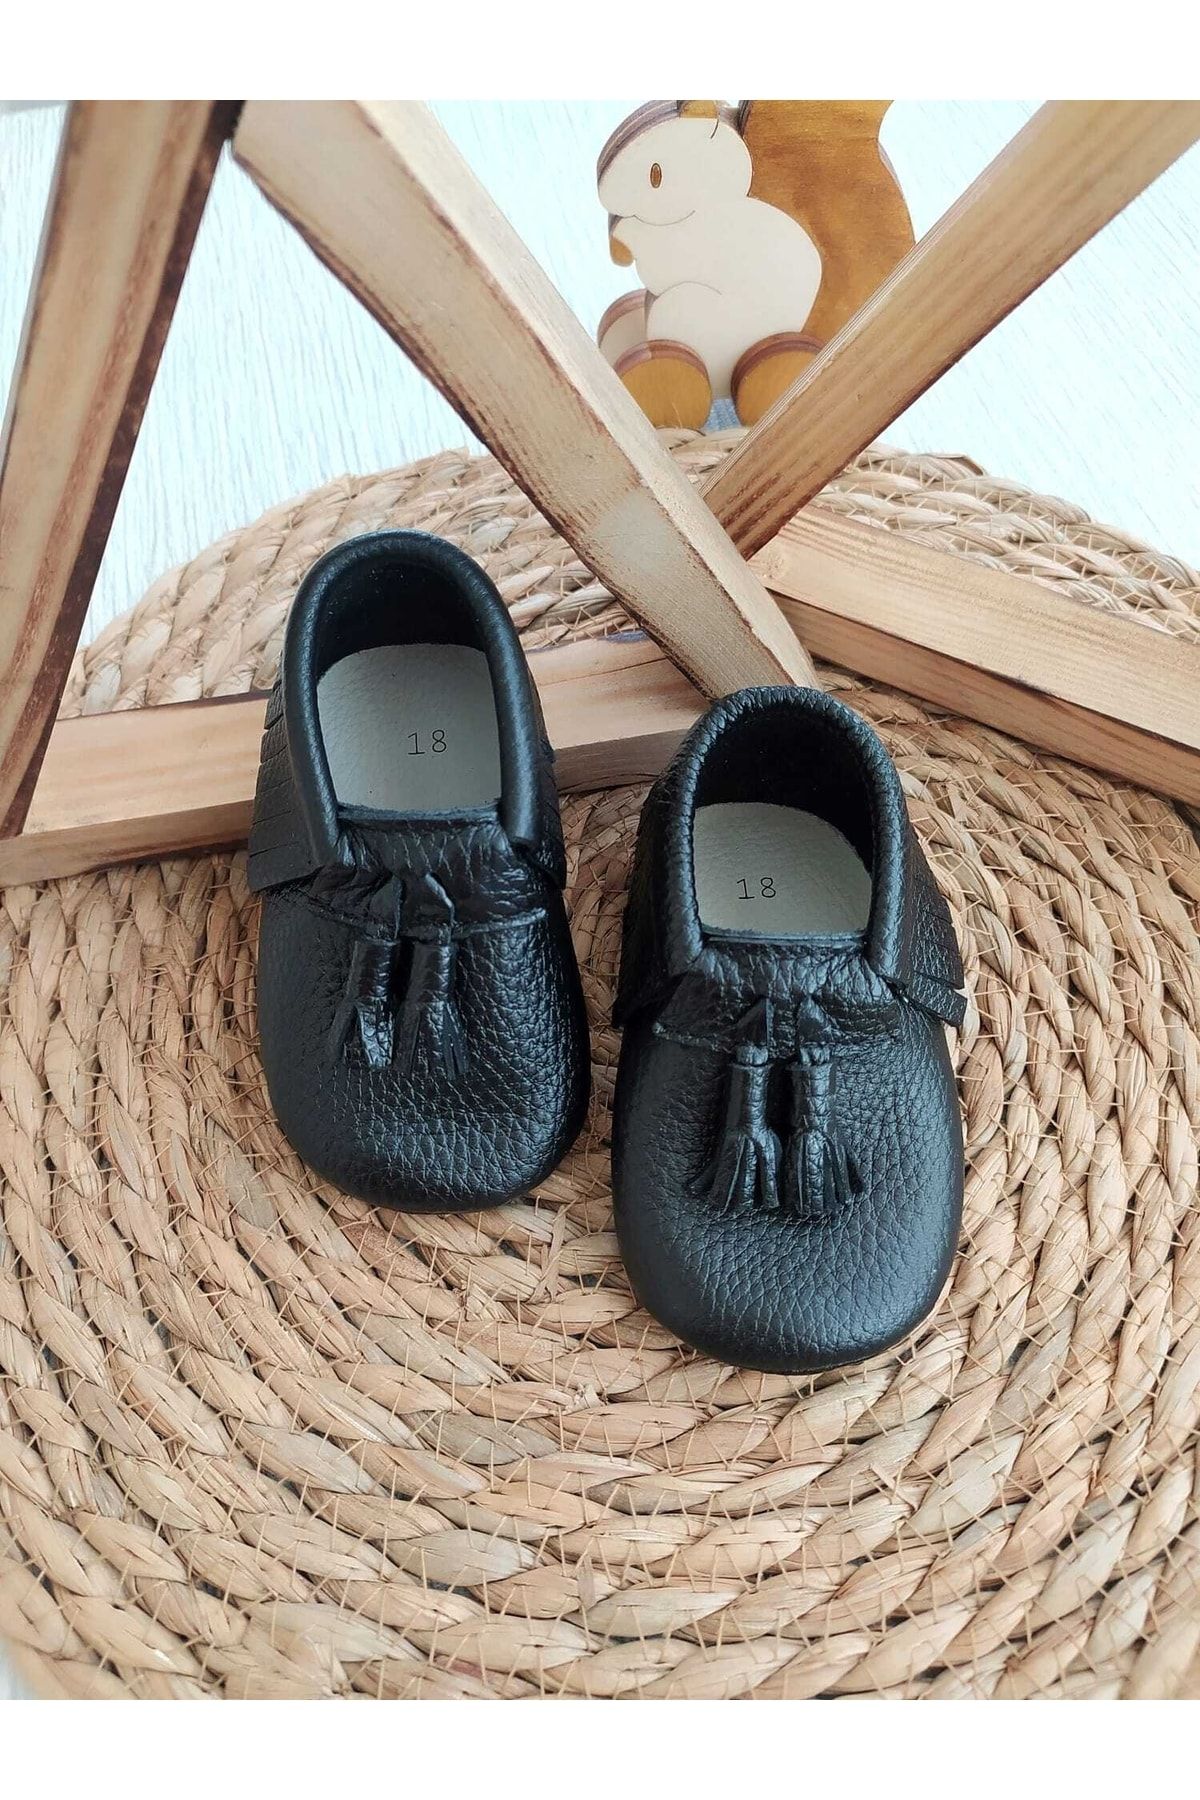 MİNİBİRİ Kıng Model Siyah Renk Bebek Makosen Patik Bebek Ayakkabısı